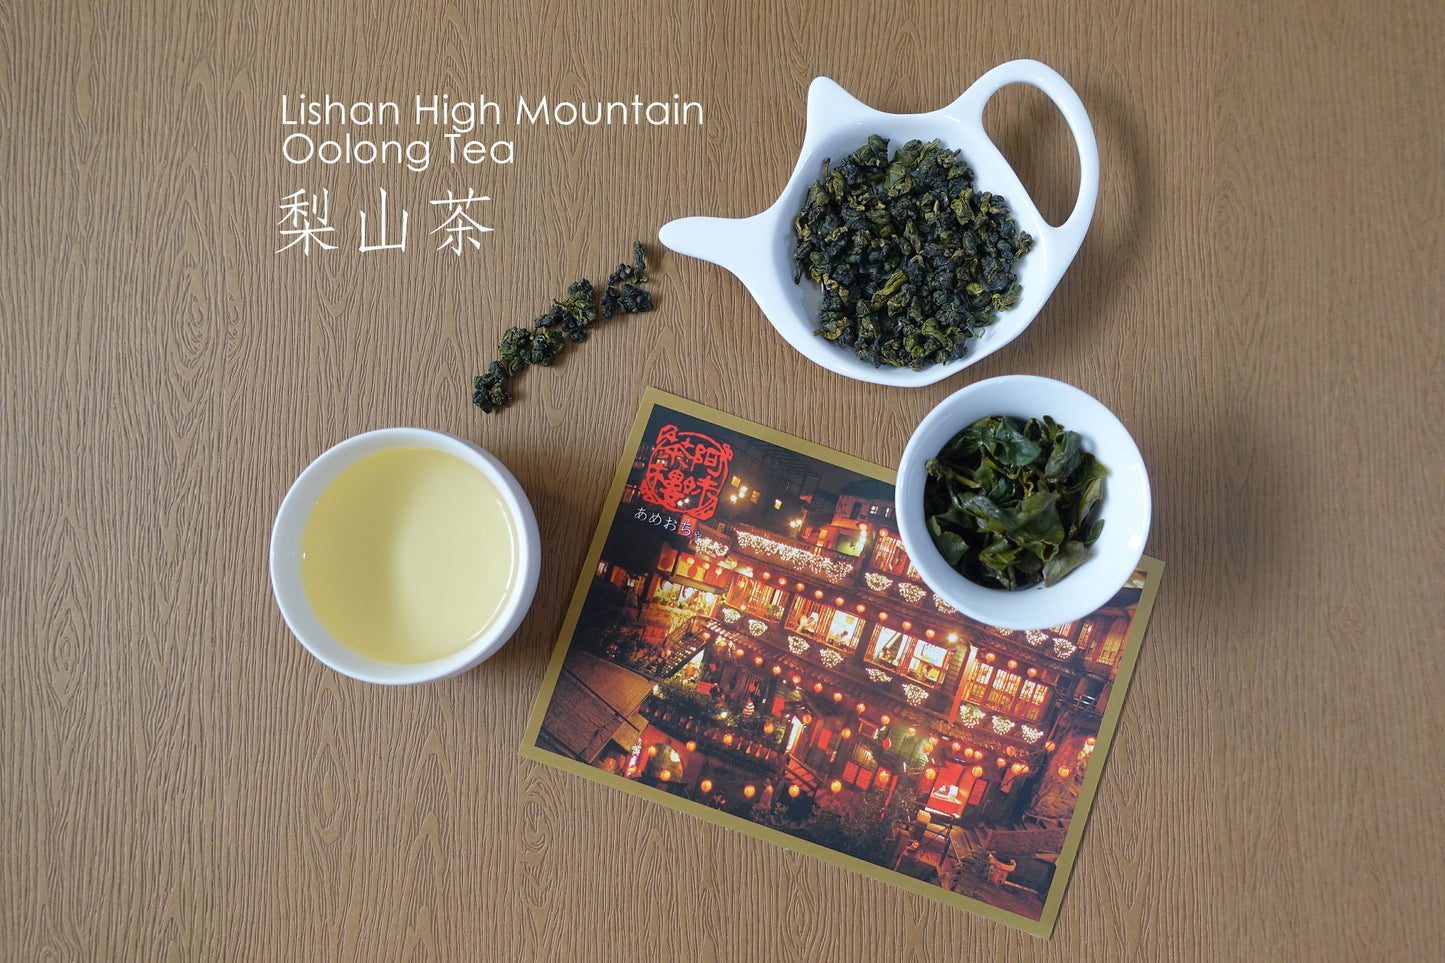 Lishan High Mountain Tea - Amei Tea House